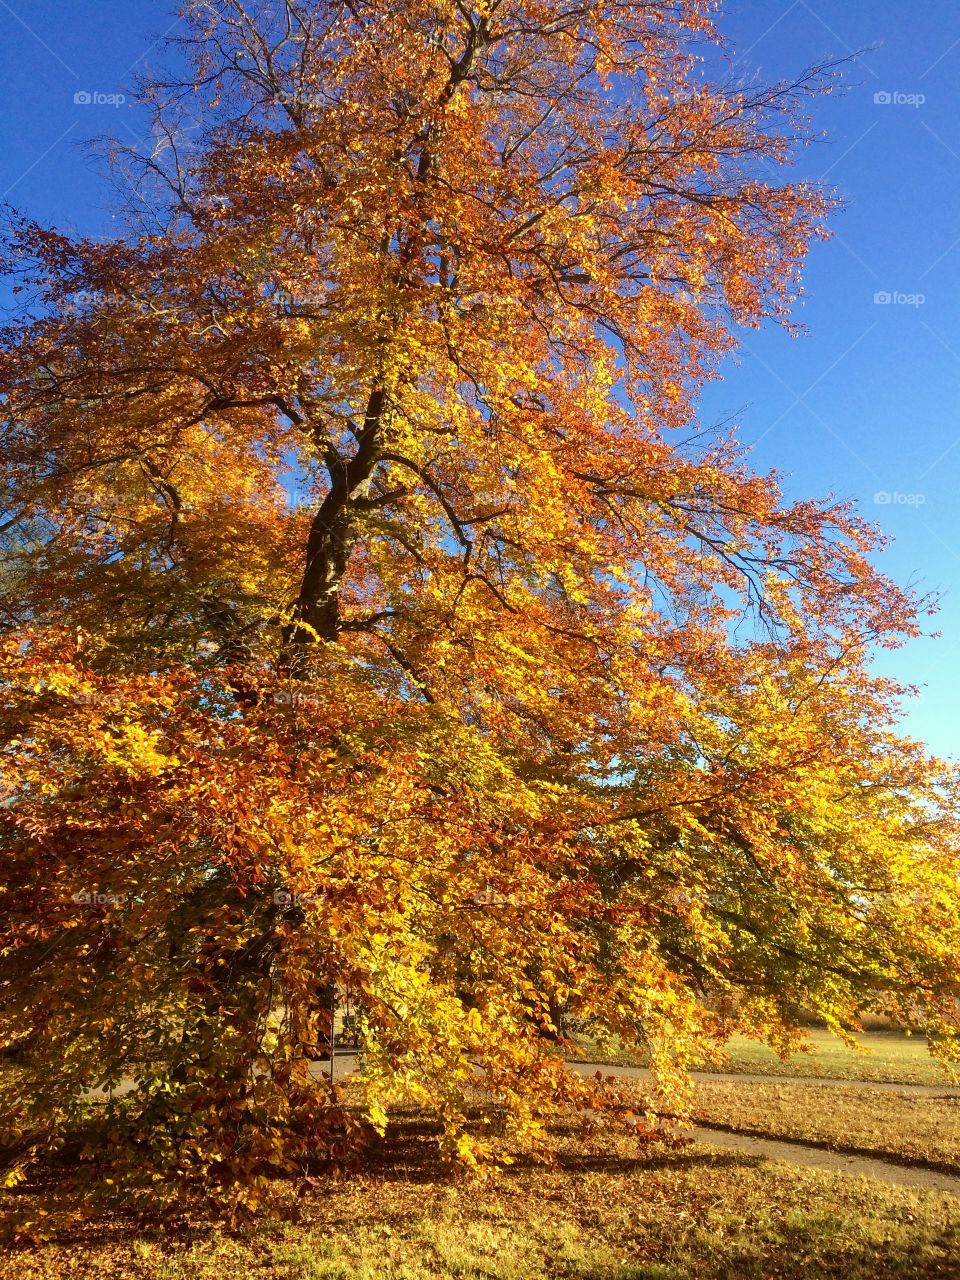 Autumn tree at park